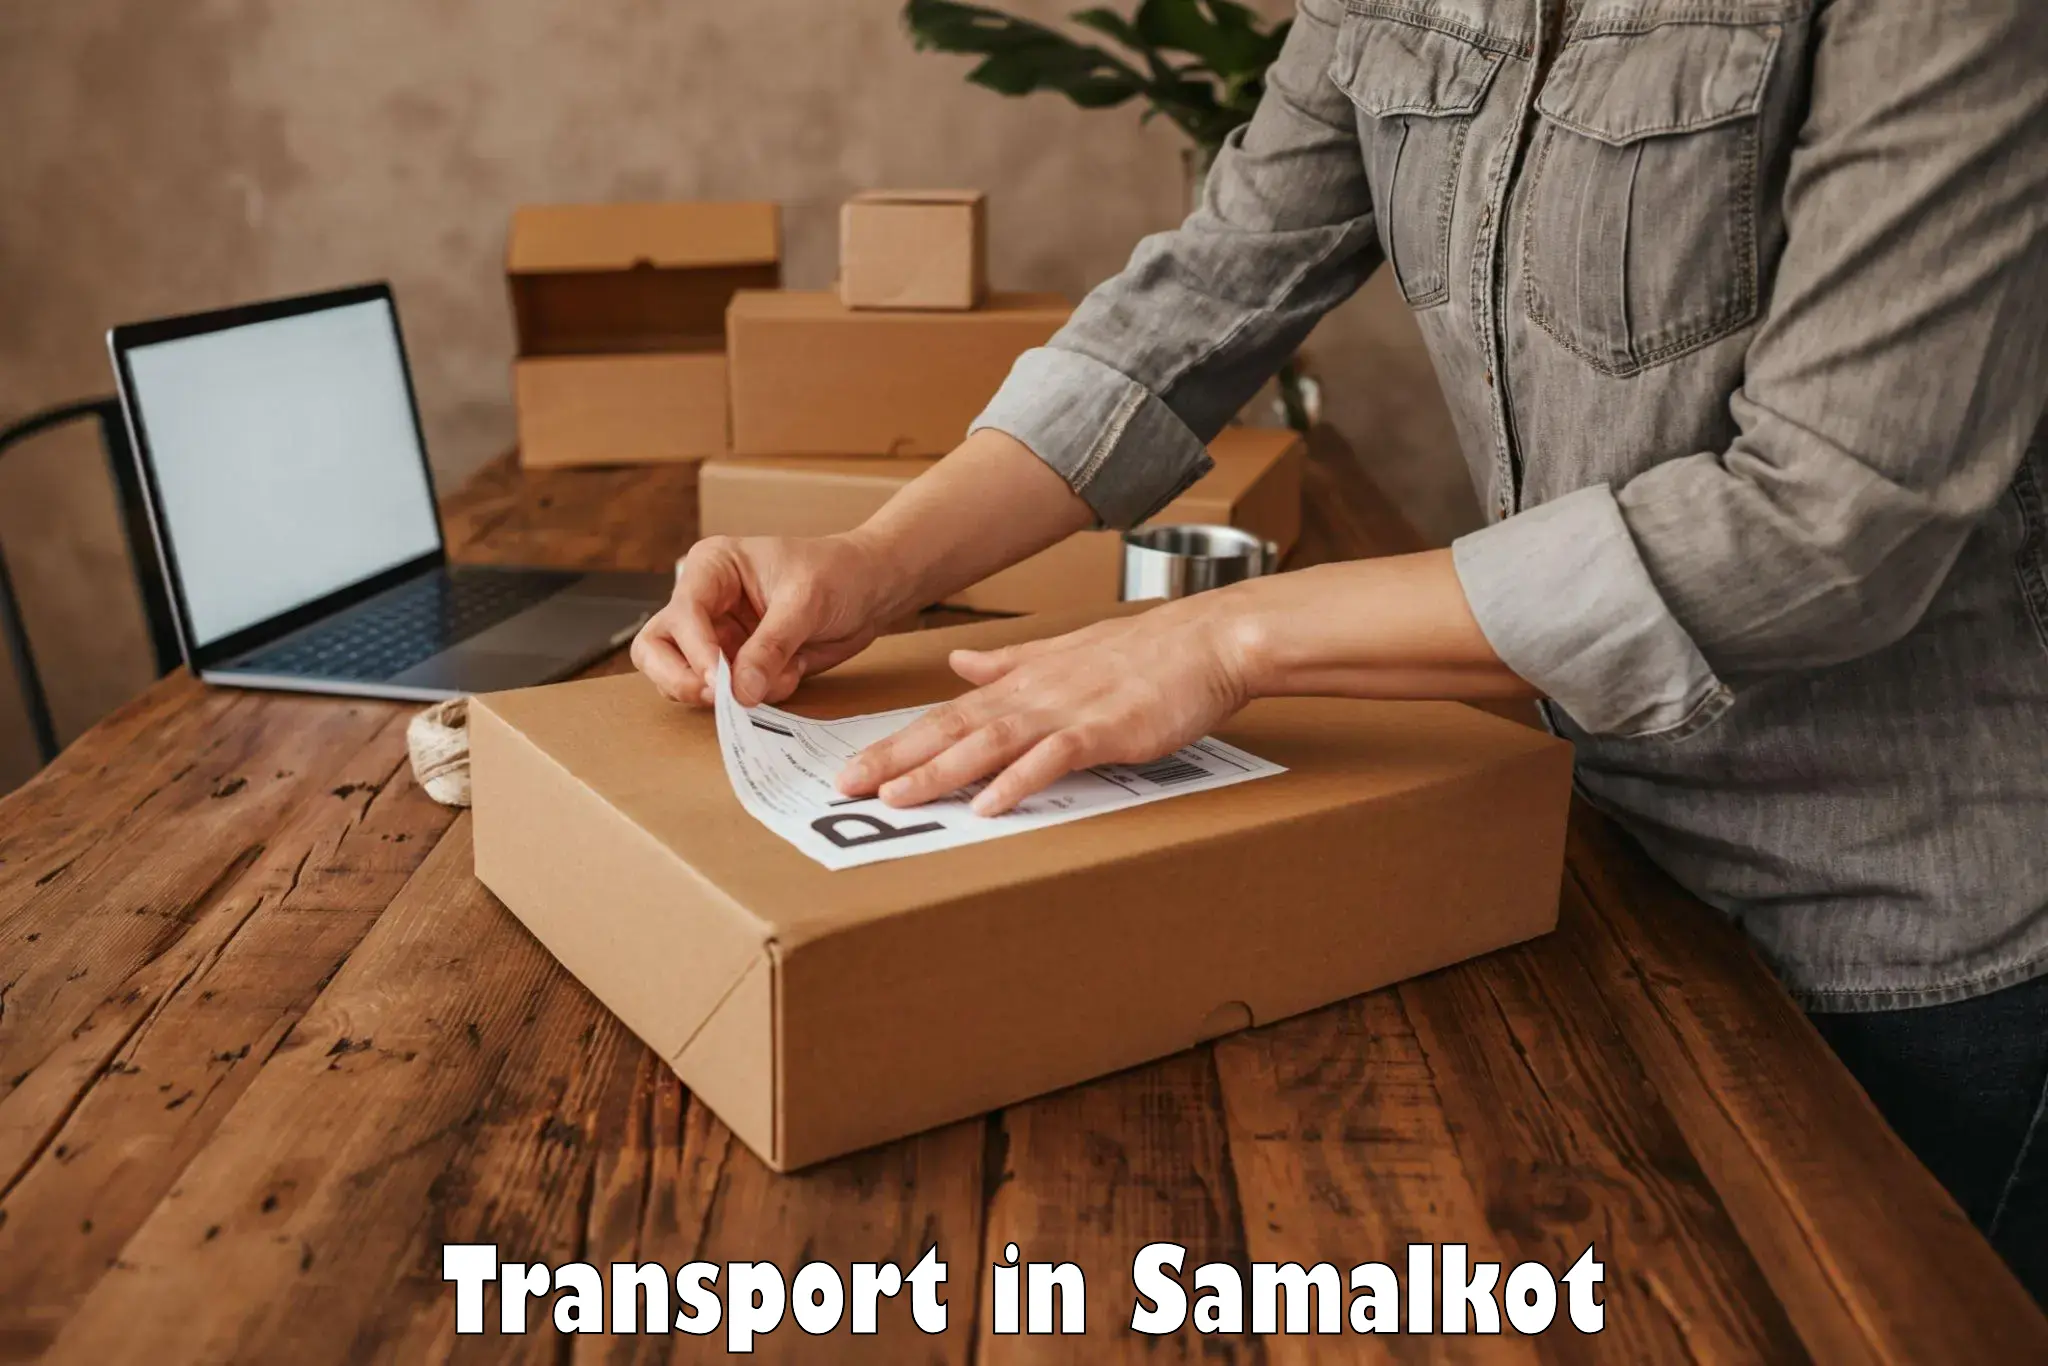 Transportation solution services in Samalkot